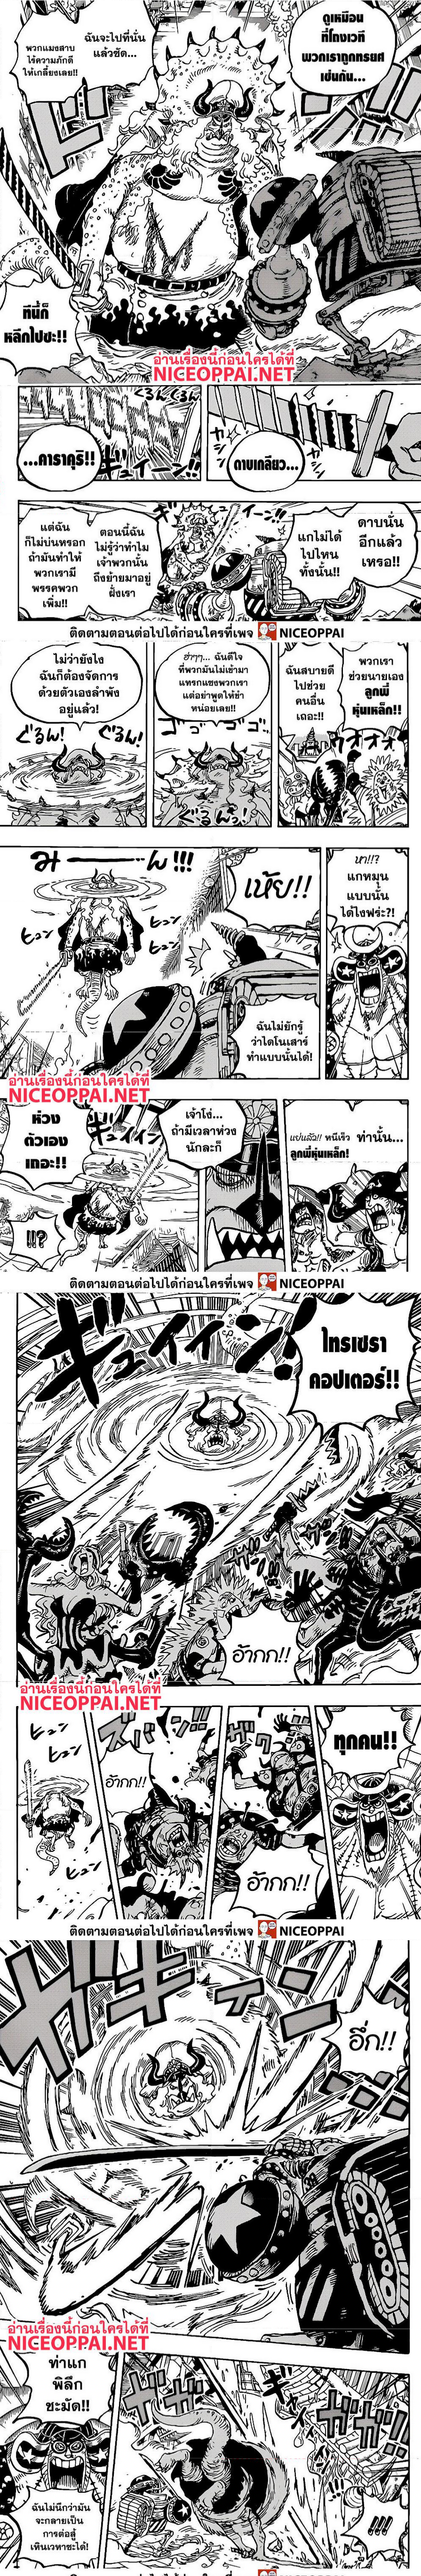 One Piece1019 (2)